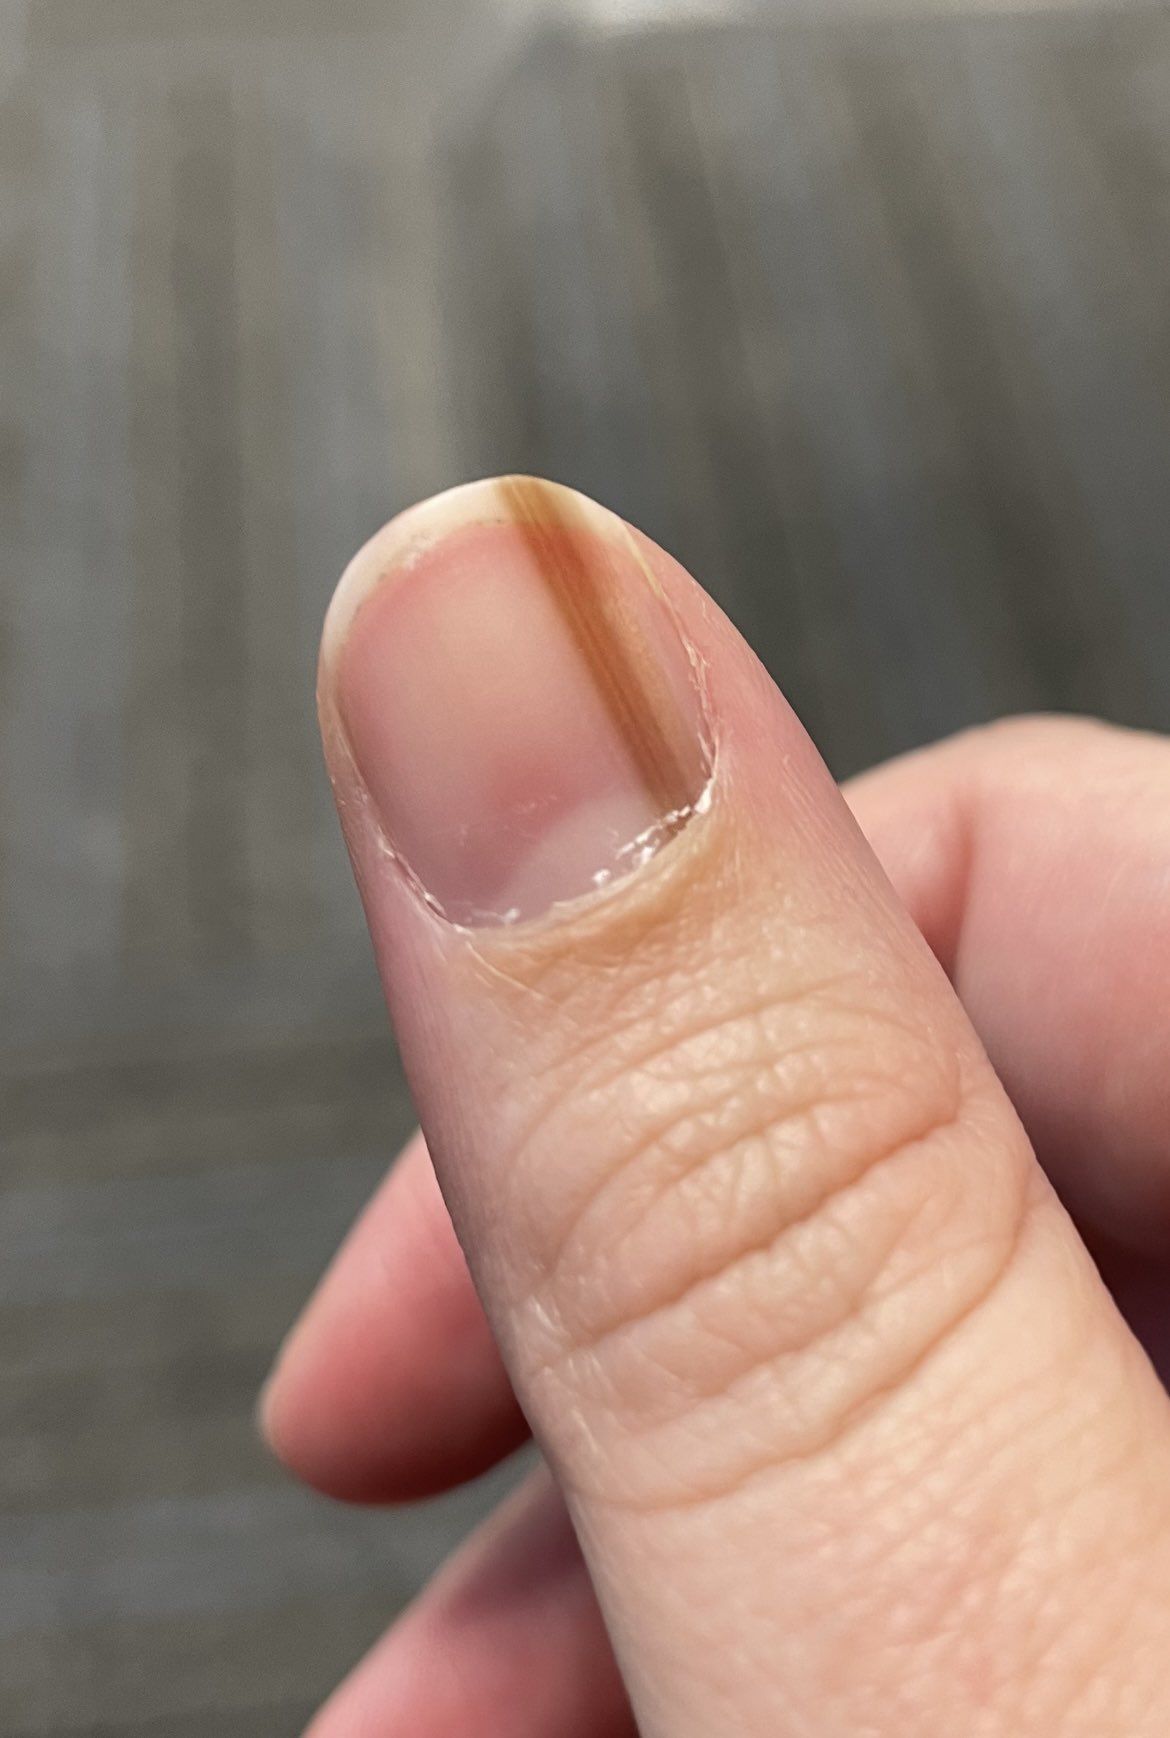 指甲长诡异褐线10年 检查才知是罕见皮肤癌